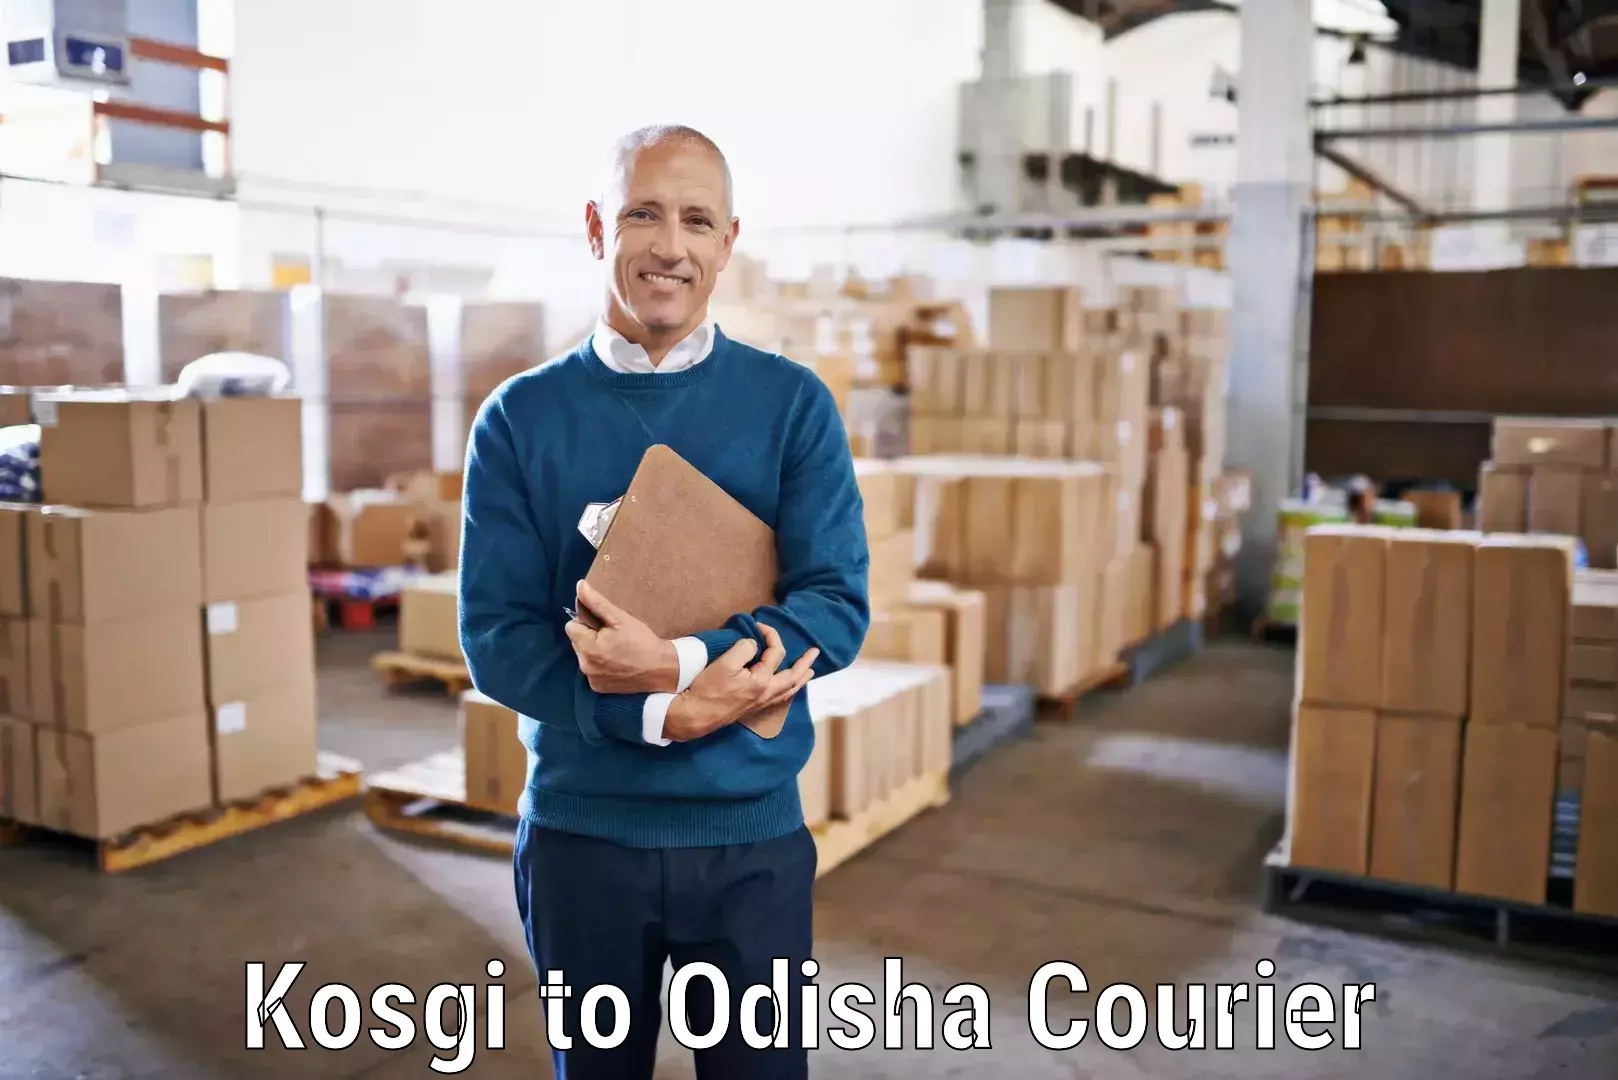 Nationwide delivery network Kosgi to Kalimela